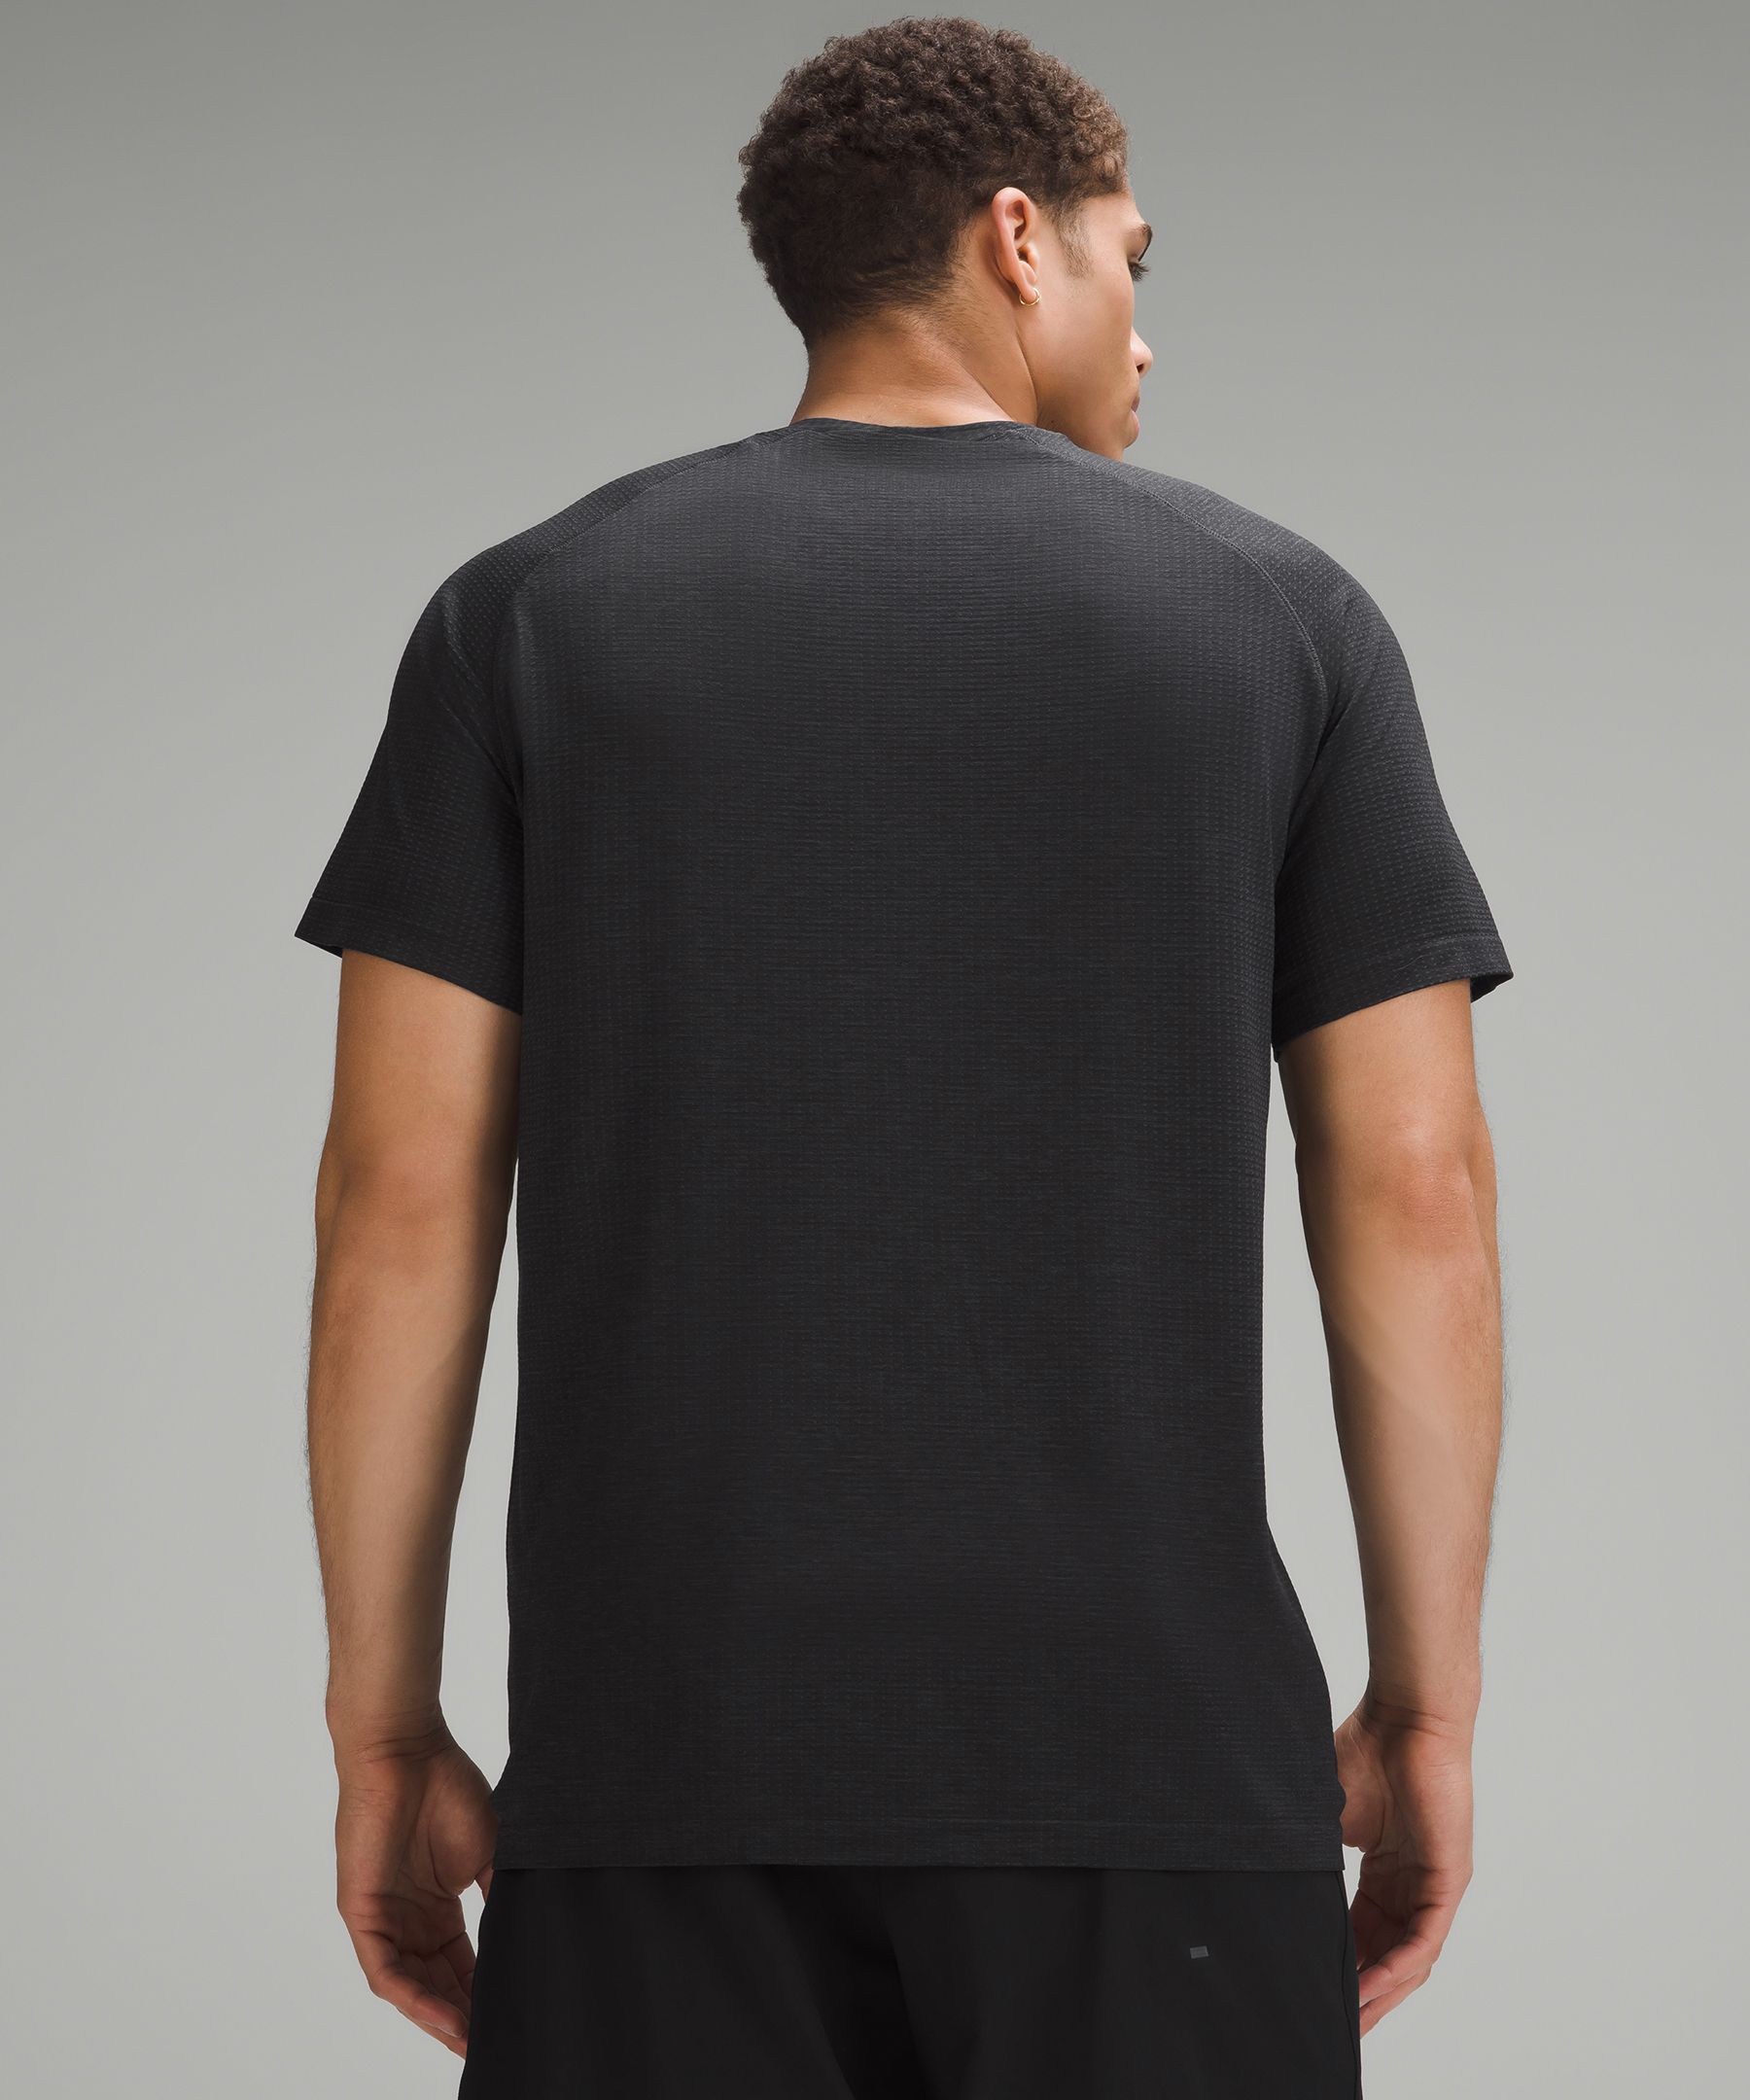 Metal Vent Tech Short-Sleeve Shirt *Logo | Men's Short Sleeve Shirts & Tee's